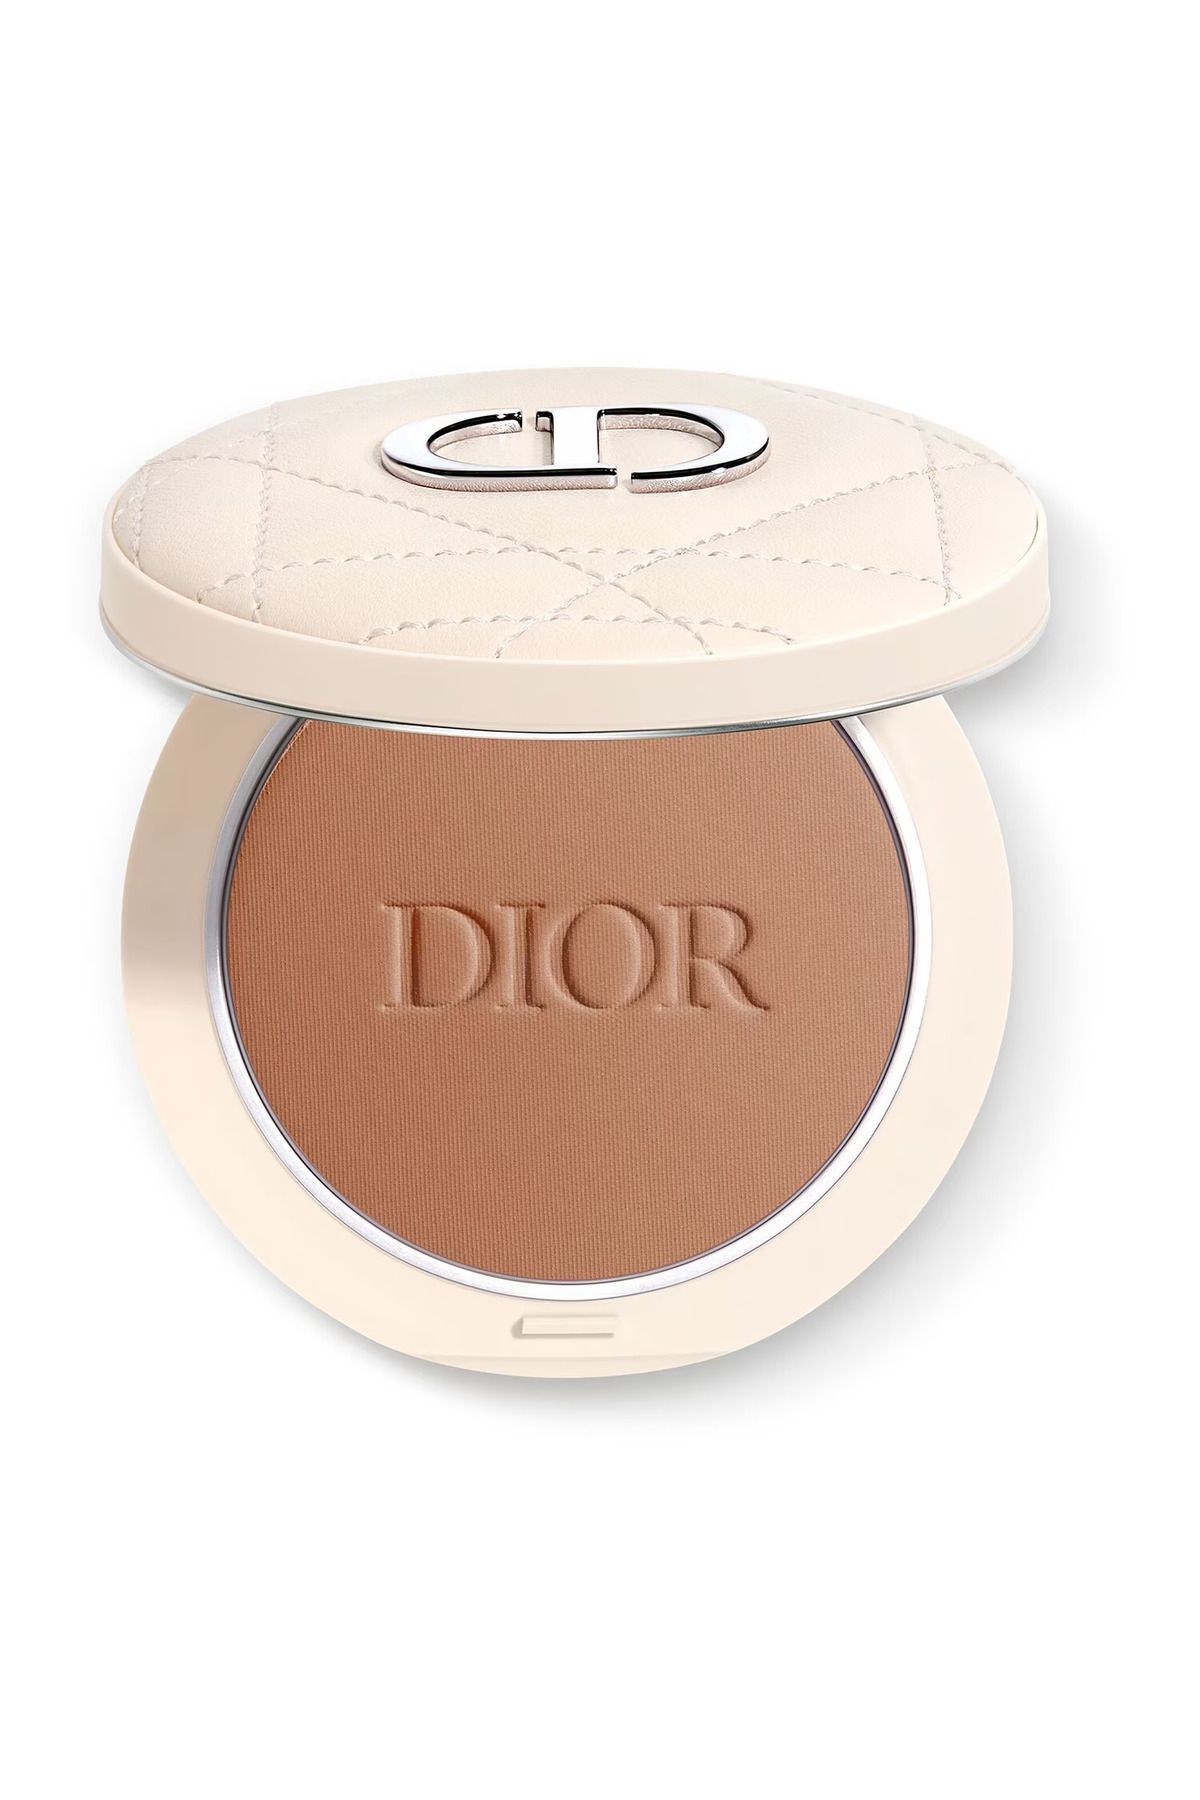 Dior - Bronzlaştırıcı Pudra - Dior Forever Natural Bronze - DIORSKIN FOREVER BRONZER POWDER 006